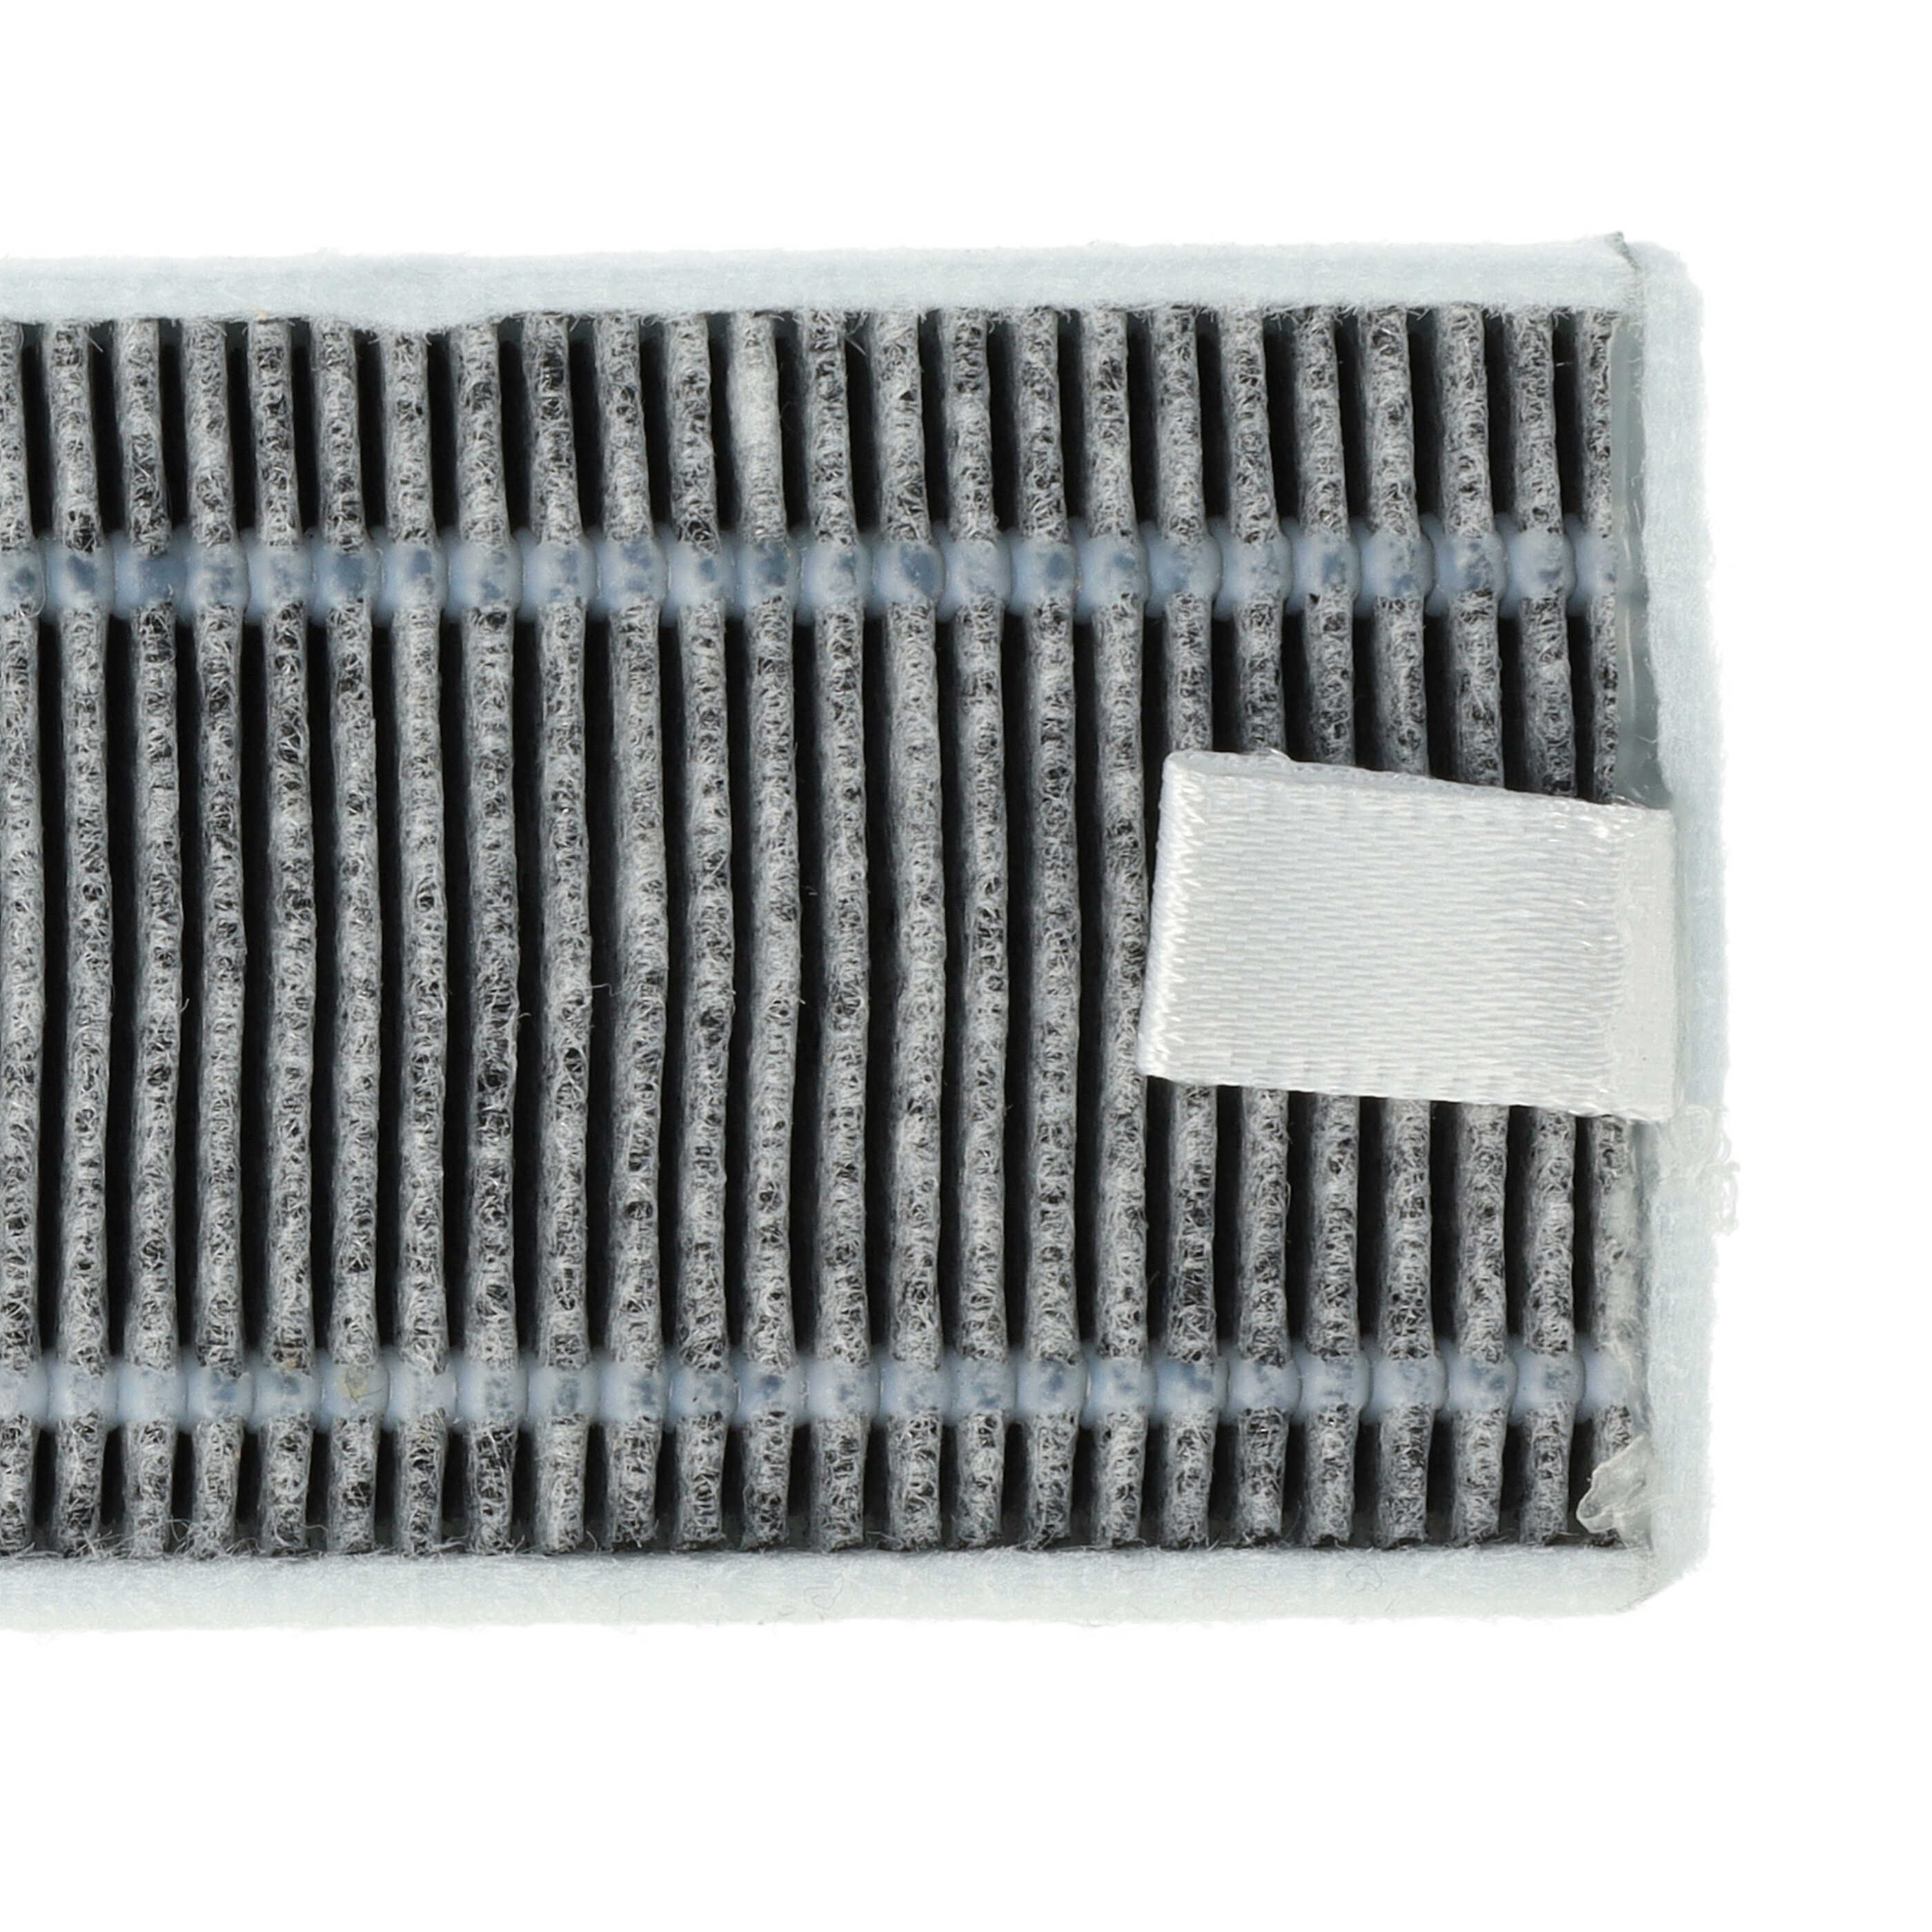 5x filtro carbón activo para robot aspirador Proscenic, Cecotec, Xiaomi M7 - 13 x 4 x 1 cm